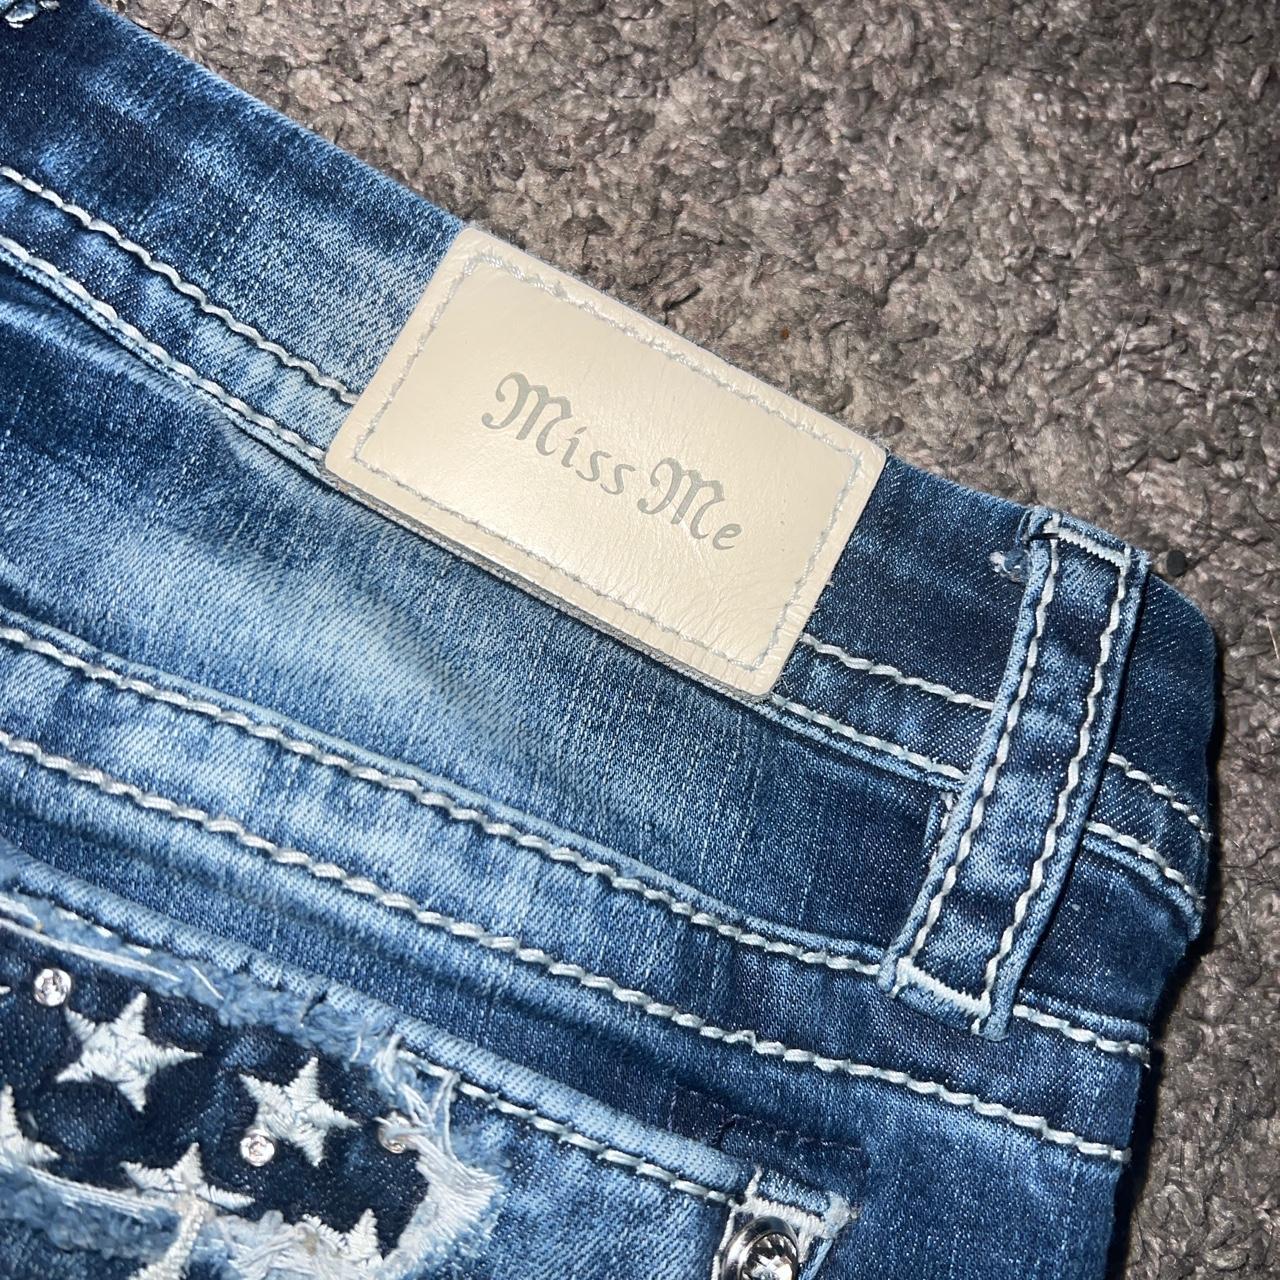 Platinum Plush Washed Embellished Blue Denim Jeans NOS Original Tags Size 7  - Etsy